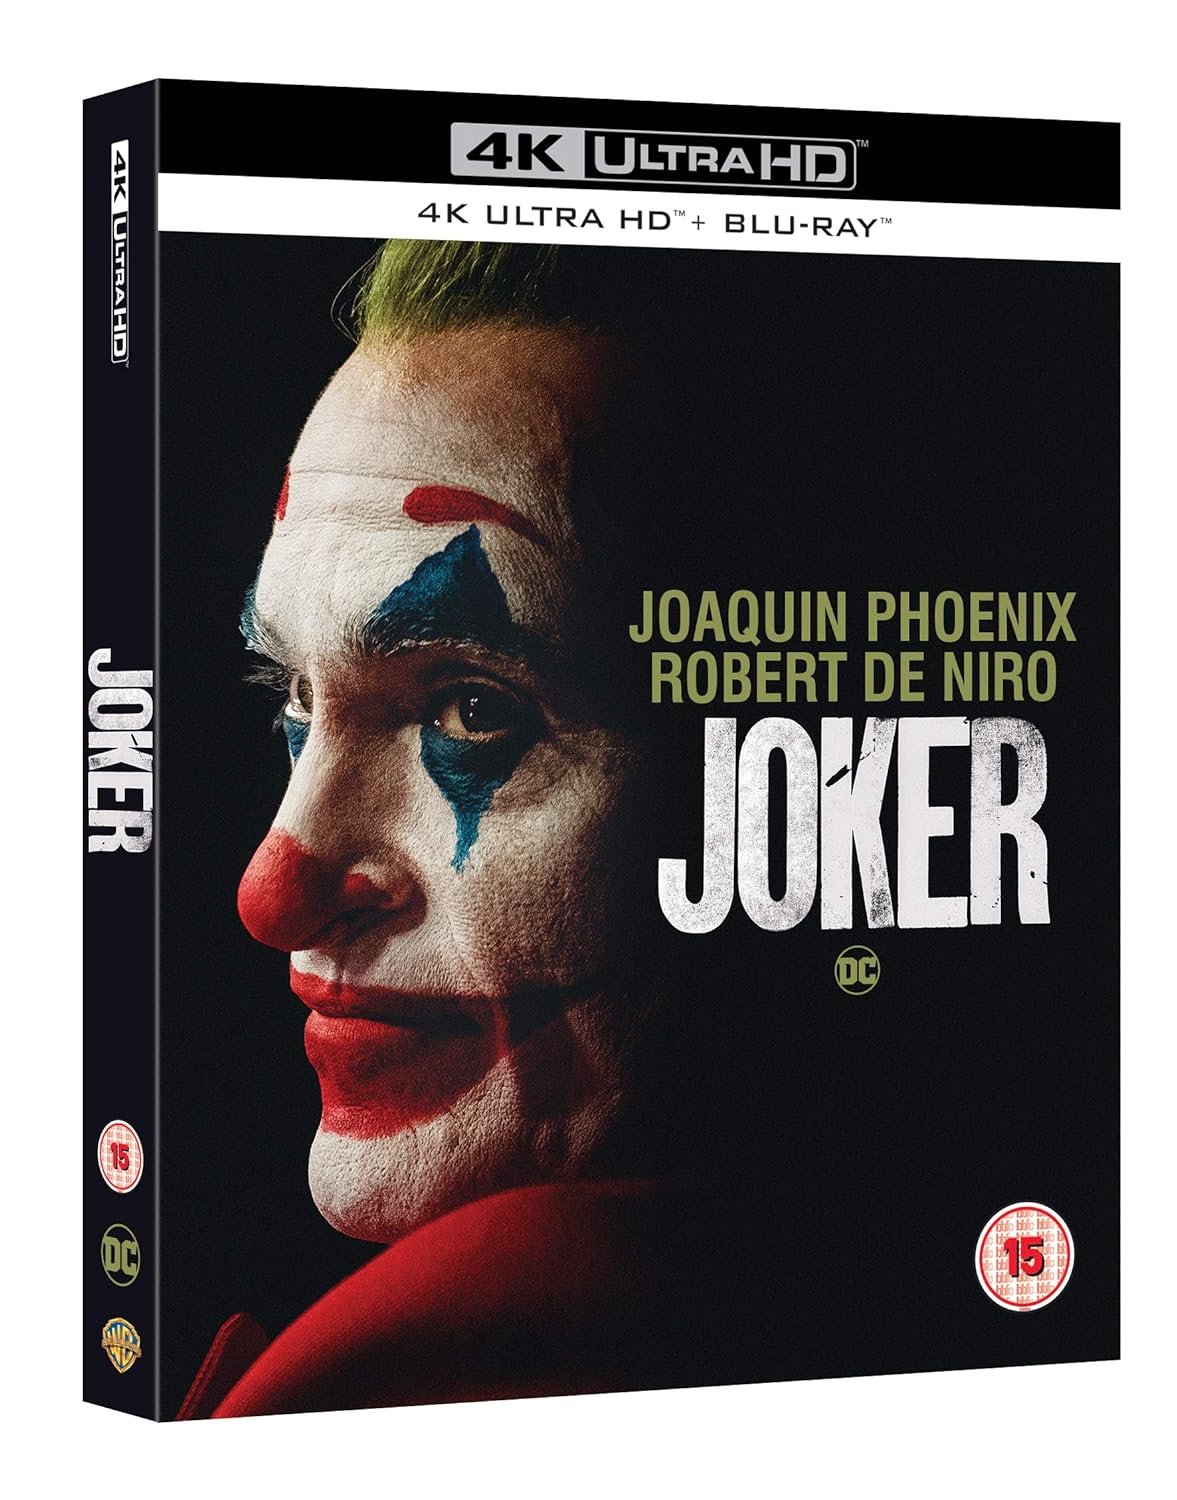 Joker [Blu-ray] [2019] [Region Free] [4K UHD]